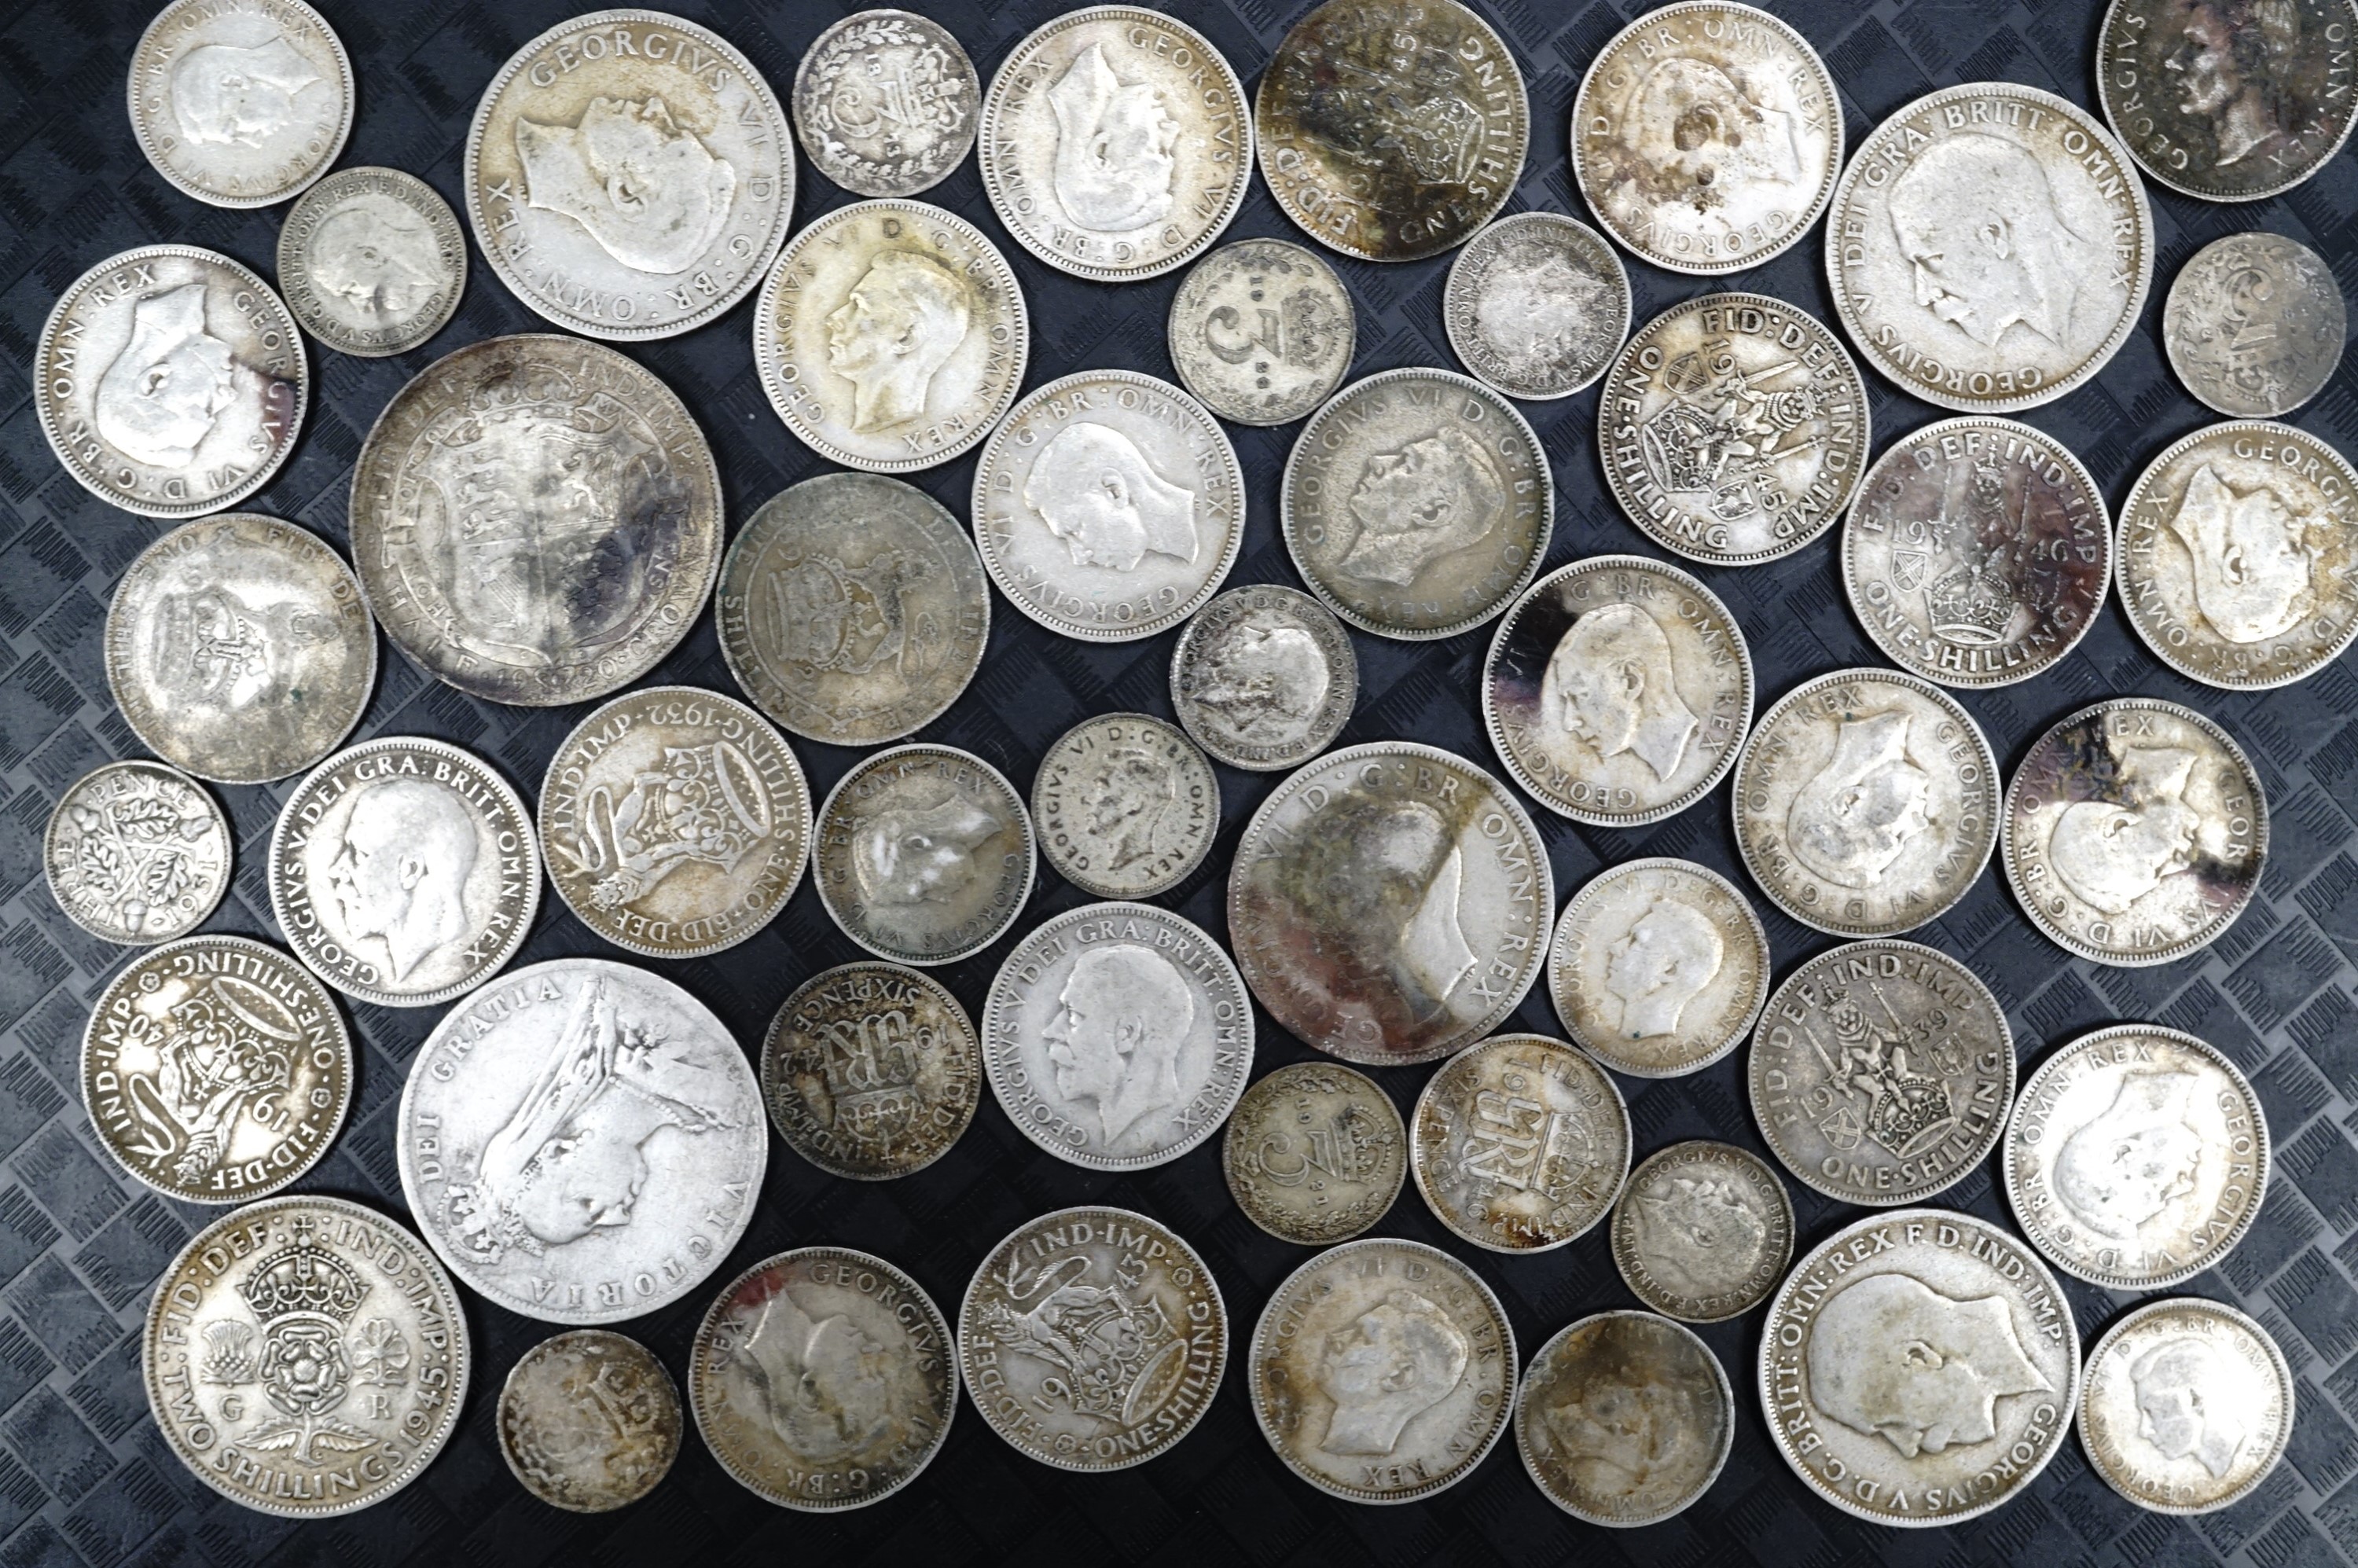 GB silver coins pre 1947, 260 g